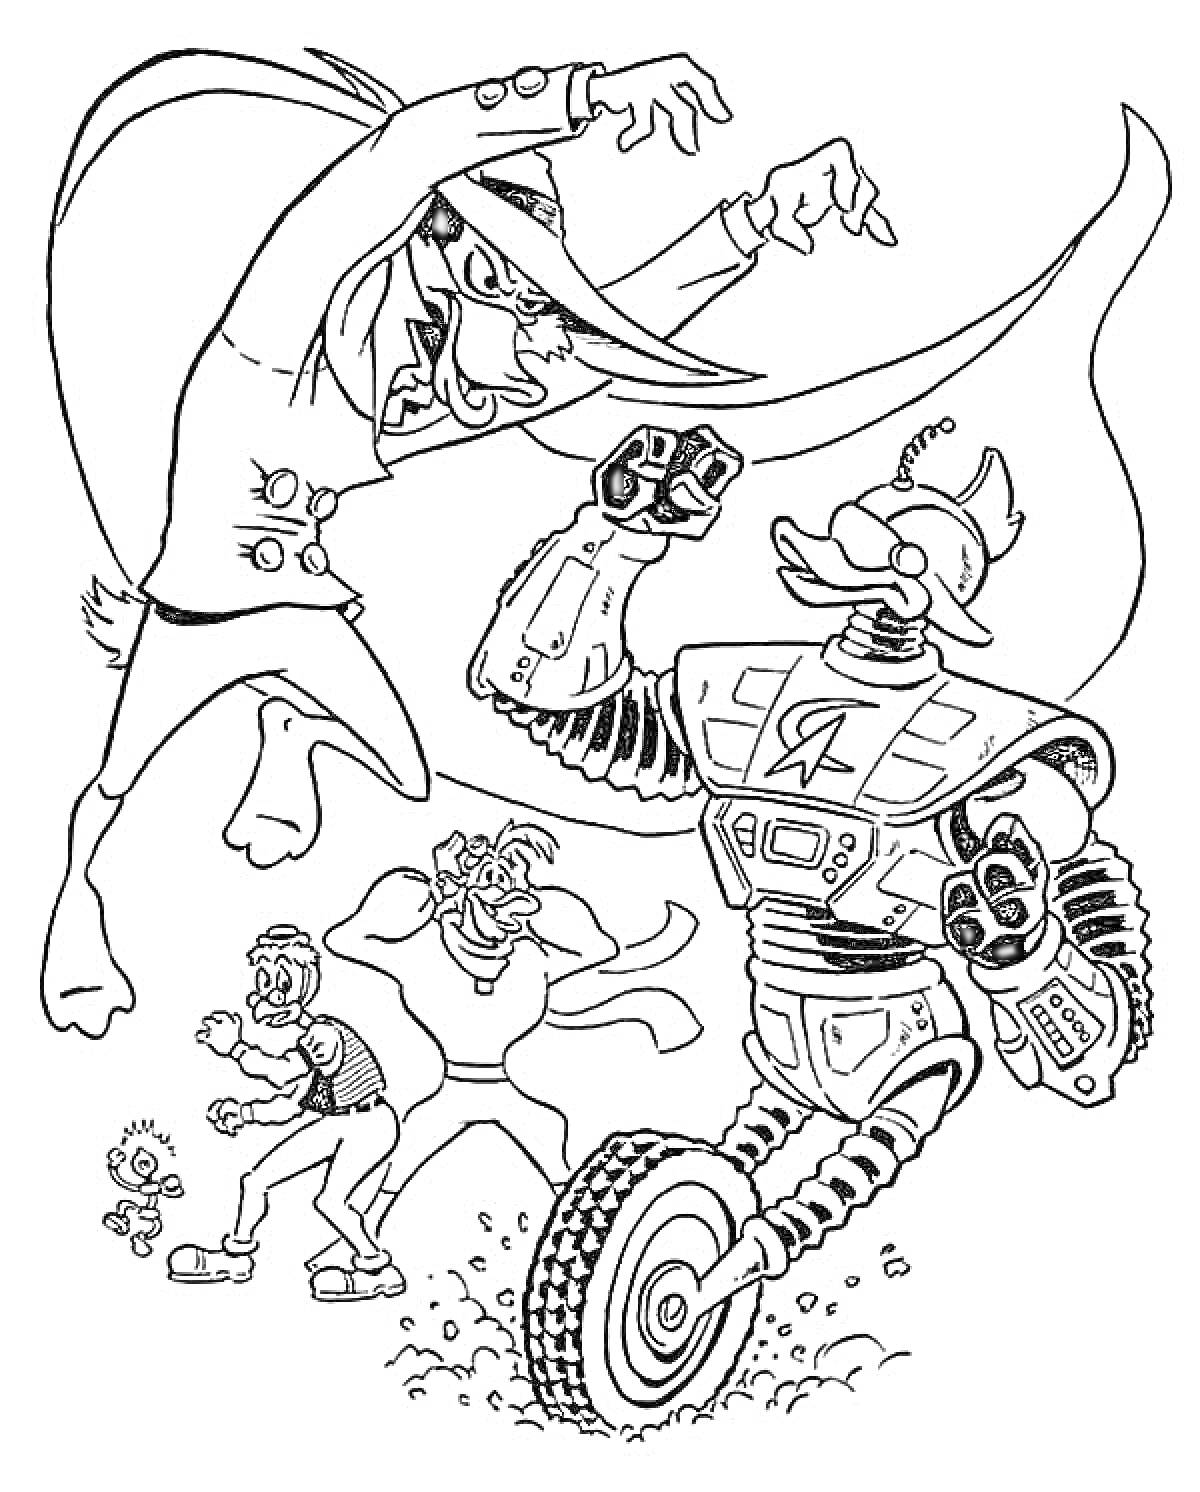 Раскраска Персонажи из мультфильмов: Летающий супергерой с длинным плащом, утка-робот на одном колесе, маленький персонаж, чудак с усами и мышечный супергерой